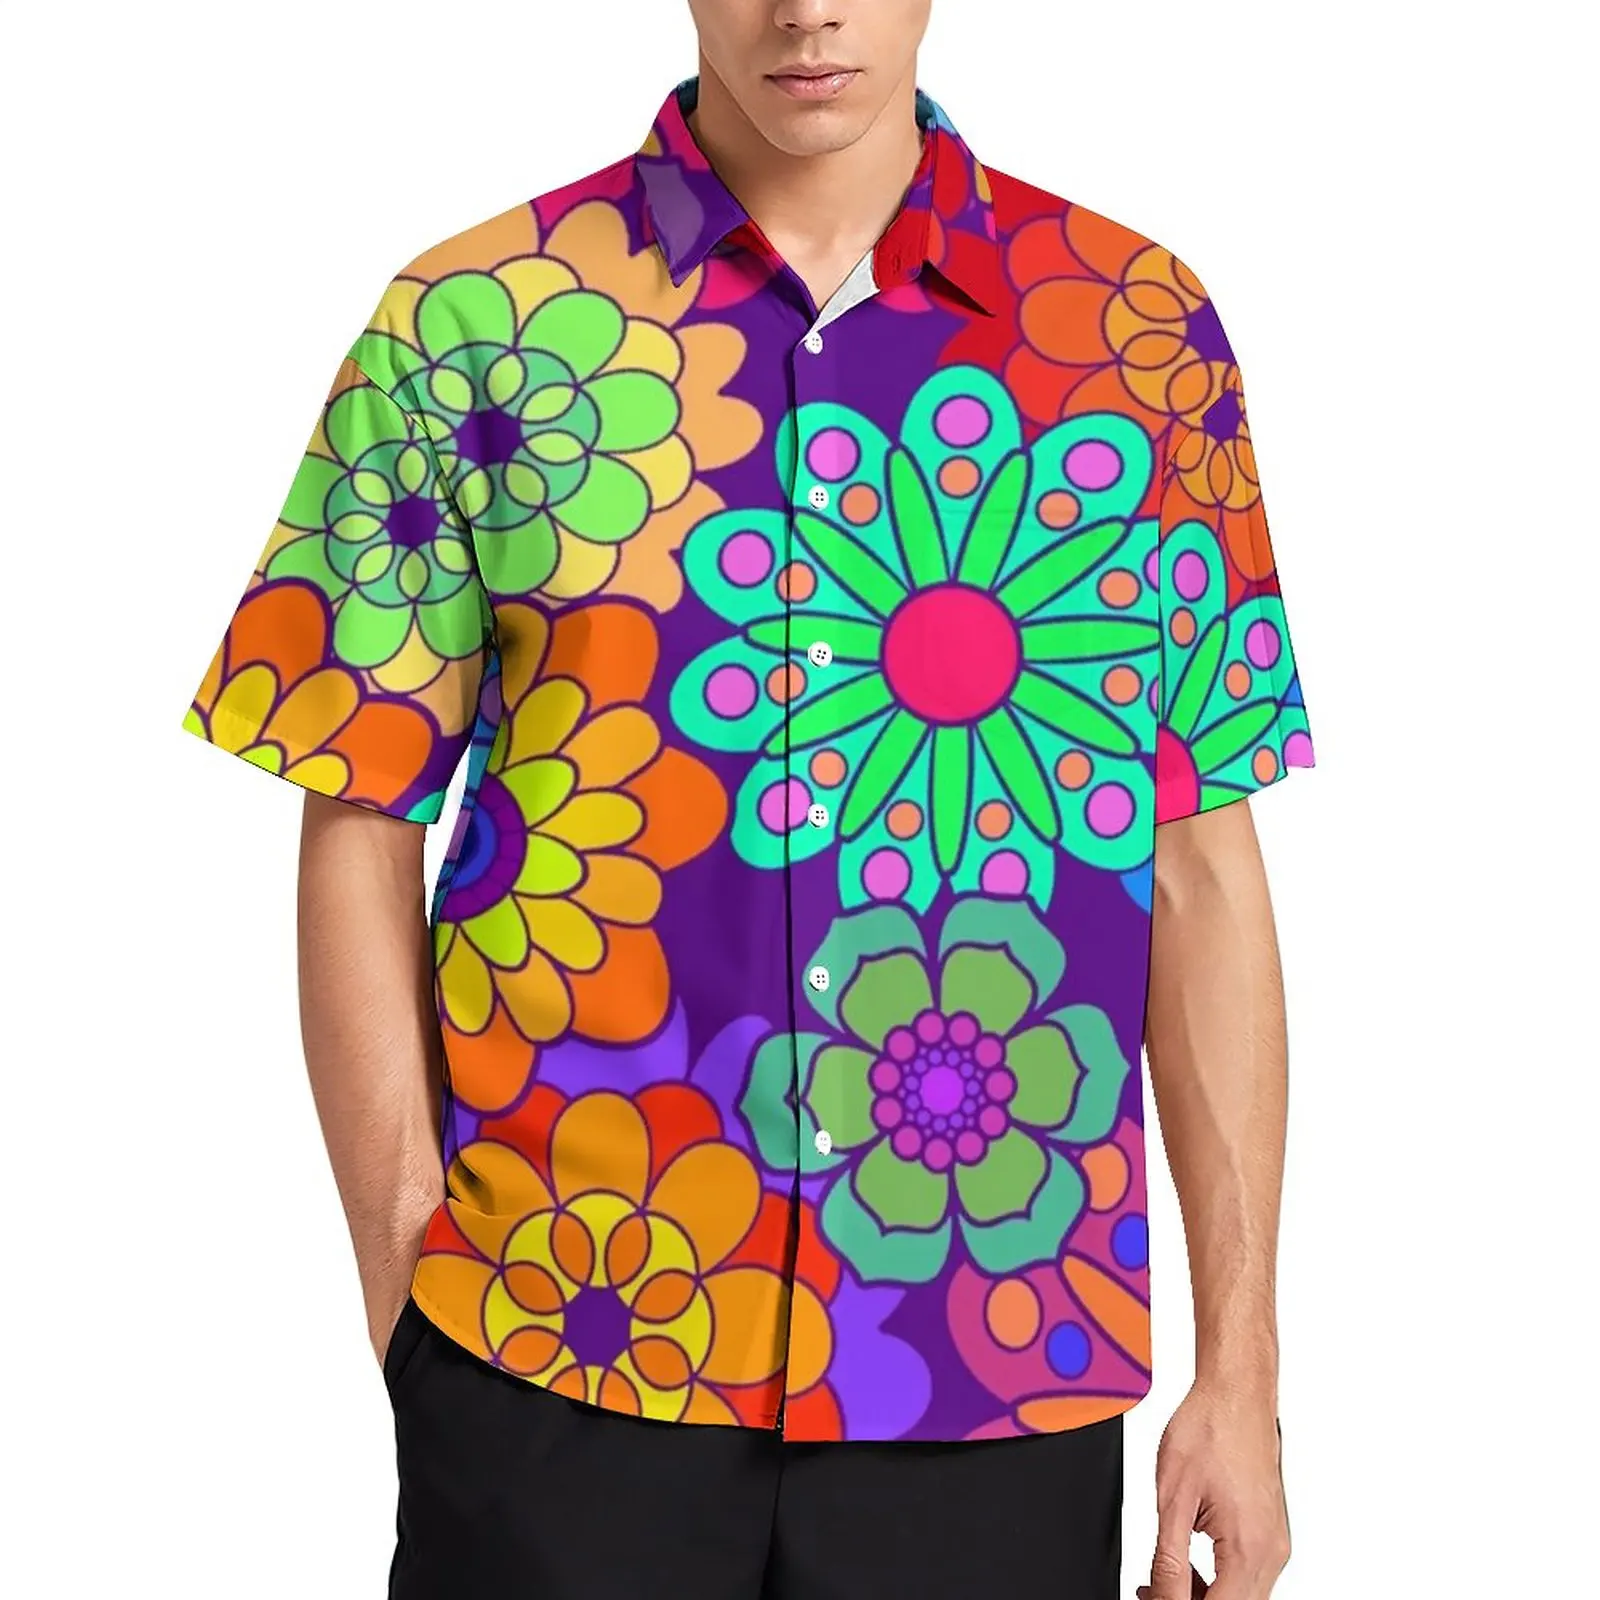 

Ретро хиппи цветы пляжная рубашка цветок Мощность печати Гавайские повседневные рубашки для мужчин уличный стиль блузки с коротким рукаво...